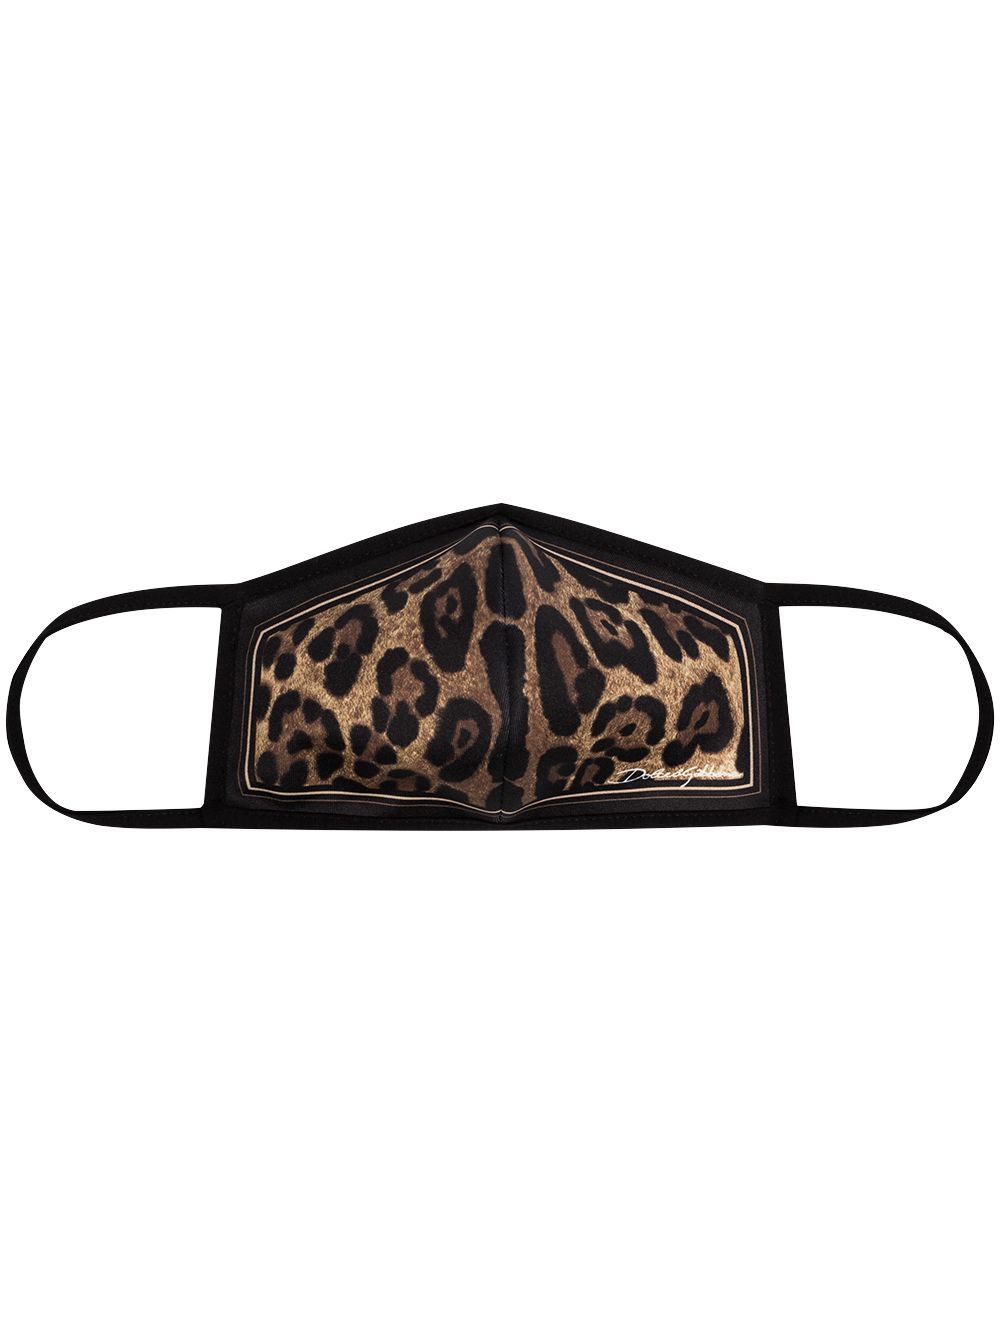 фото Dolce & gabbana маска с леопардовым принтом